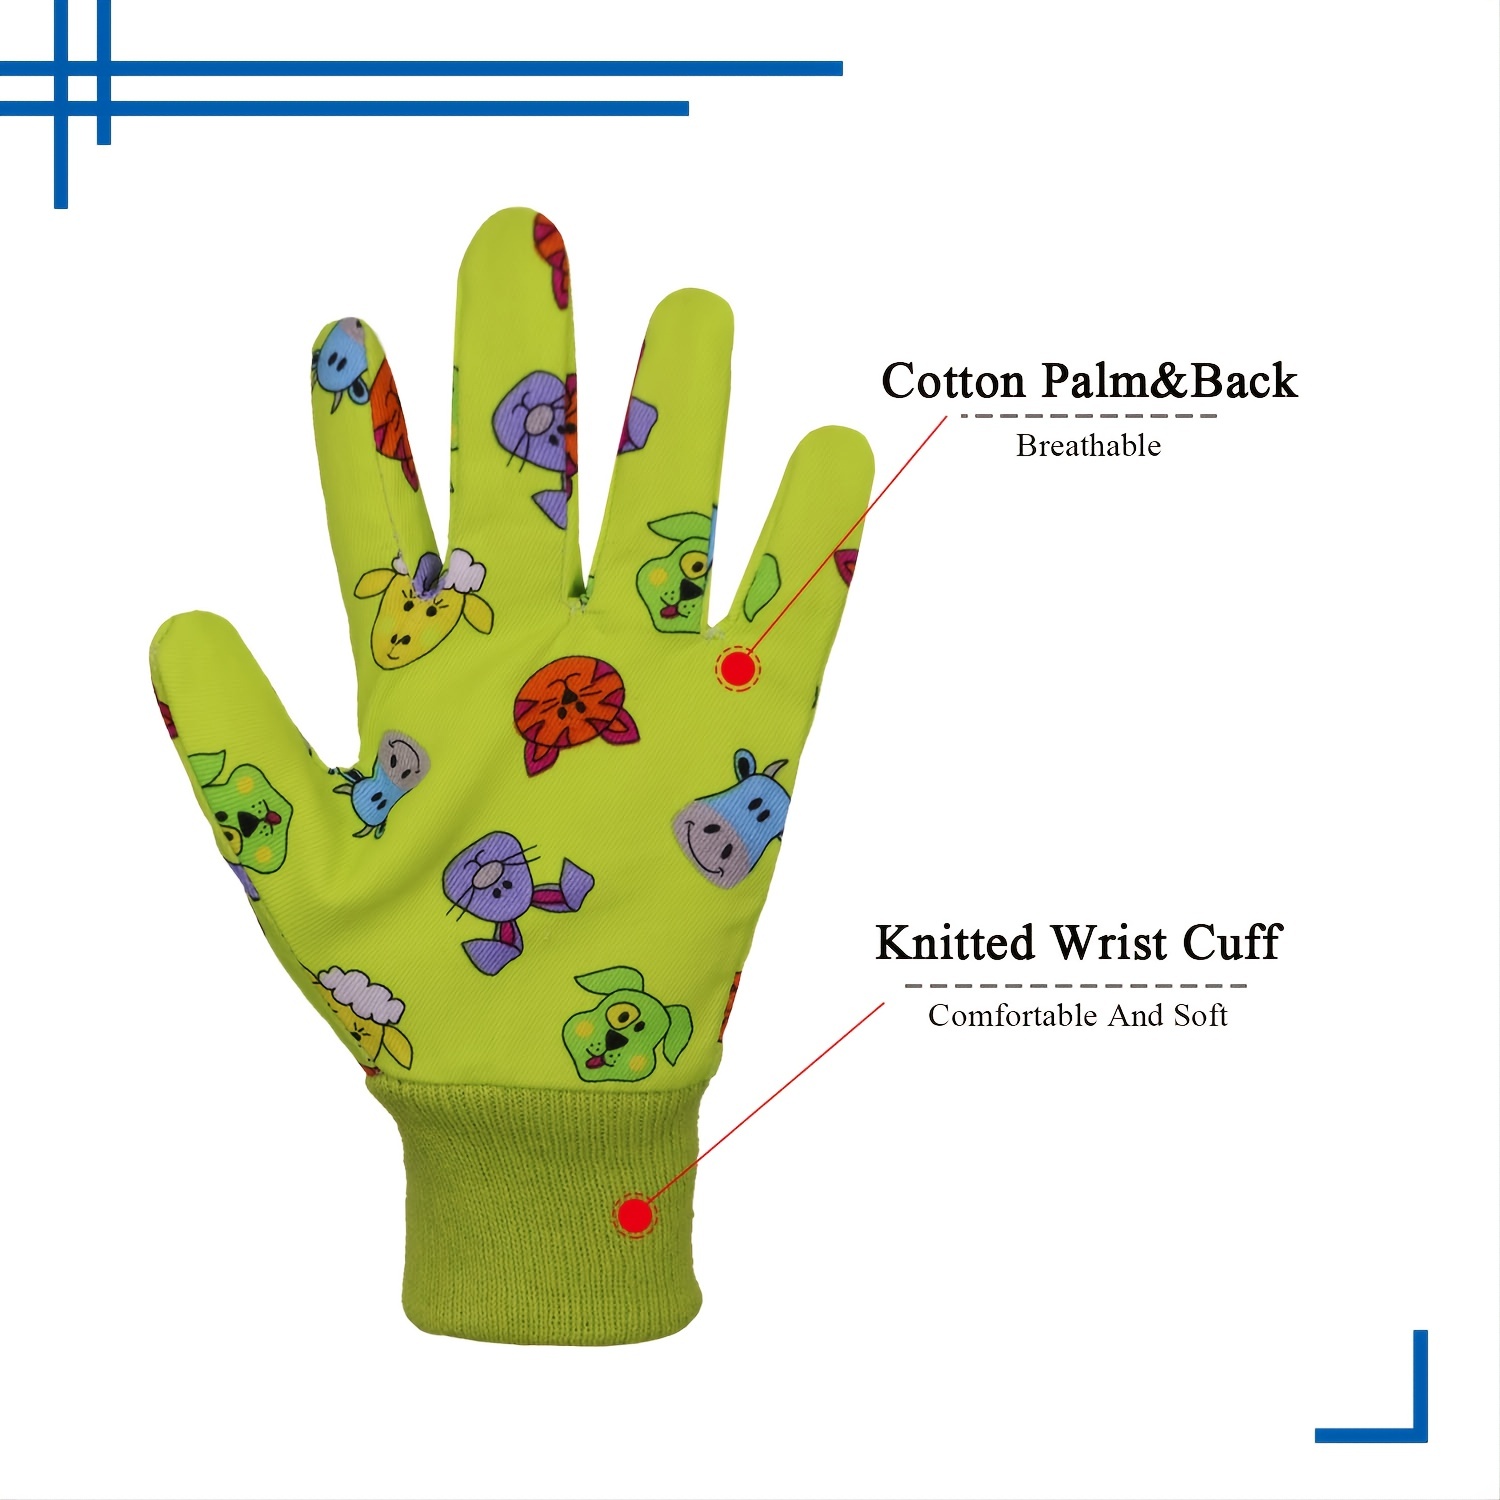 COOLJOB 3 pares de guantes de jardinería para niños de 6 a 8 años